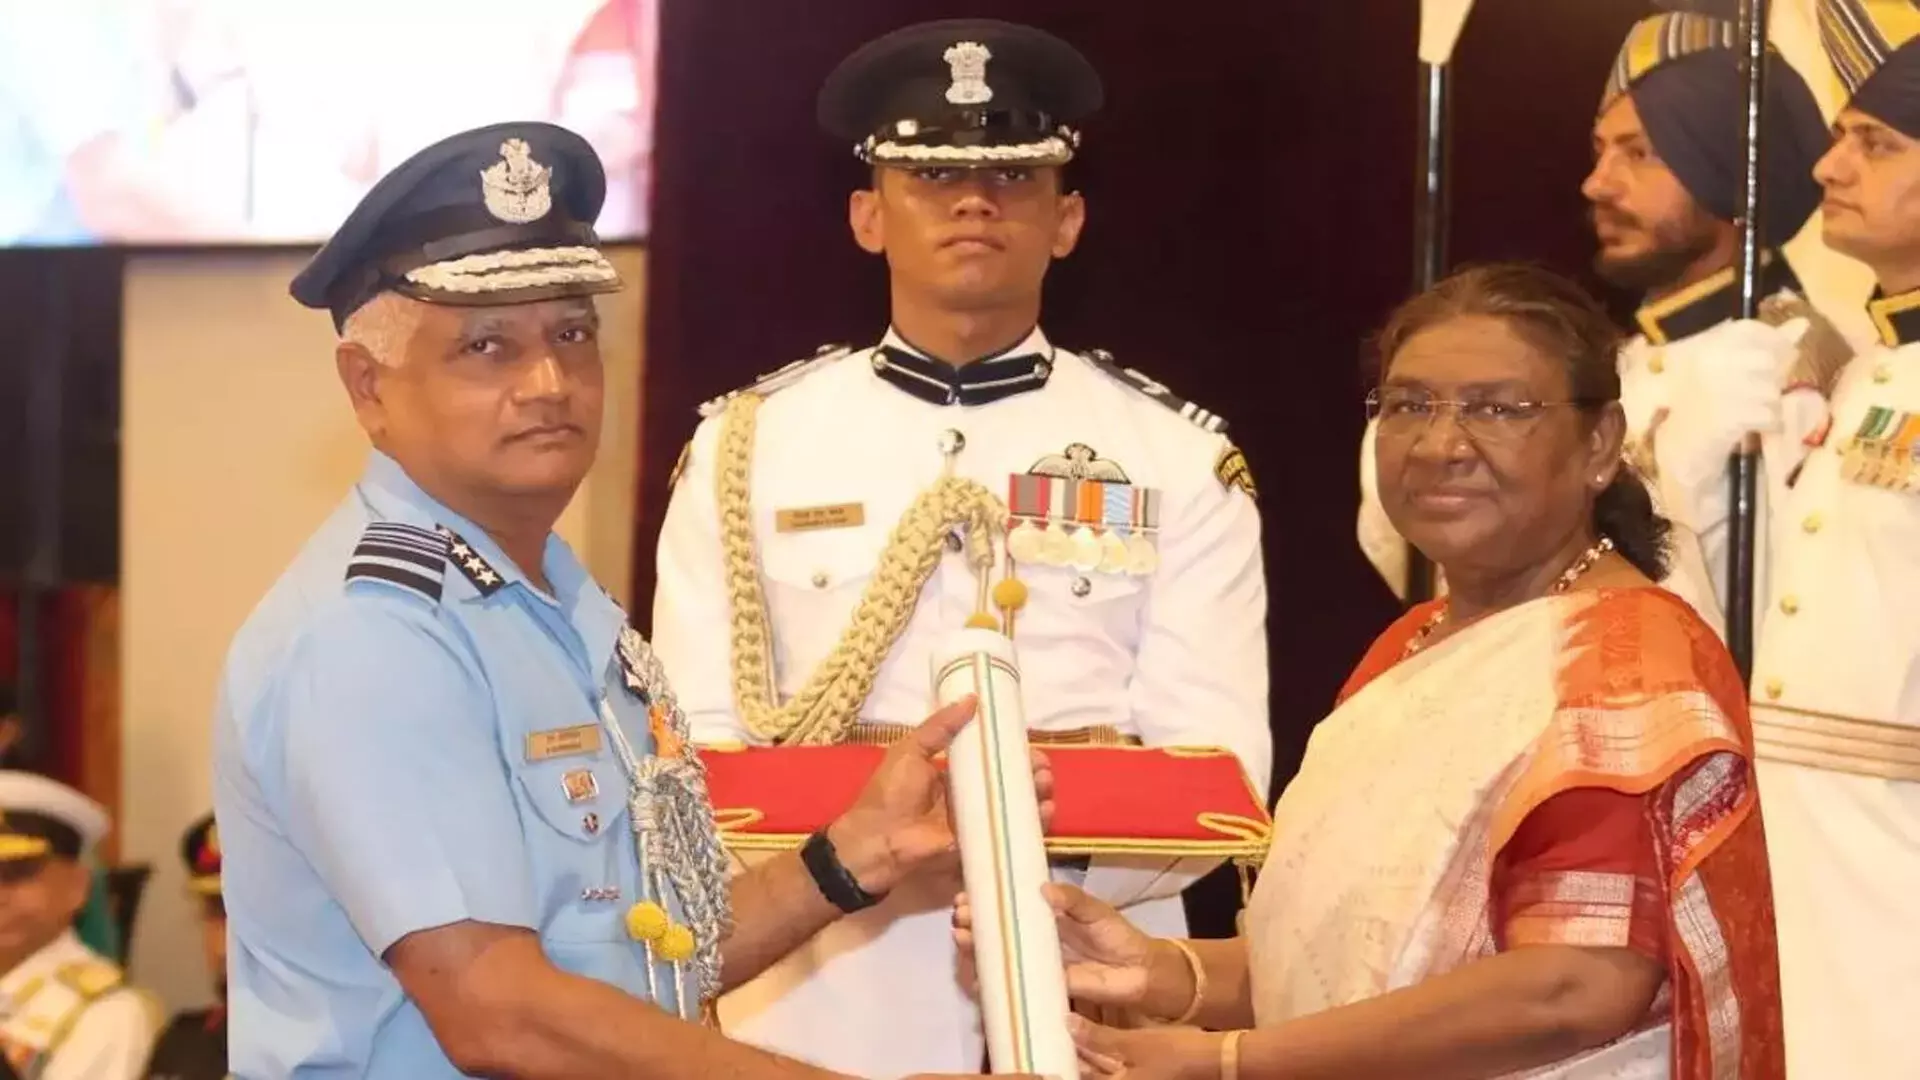 President मुर्मू ने हैदराबाद के अधिकारियों को शीर्ष पदक प्रदान किए